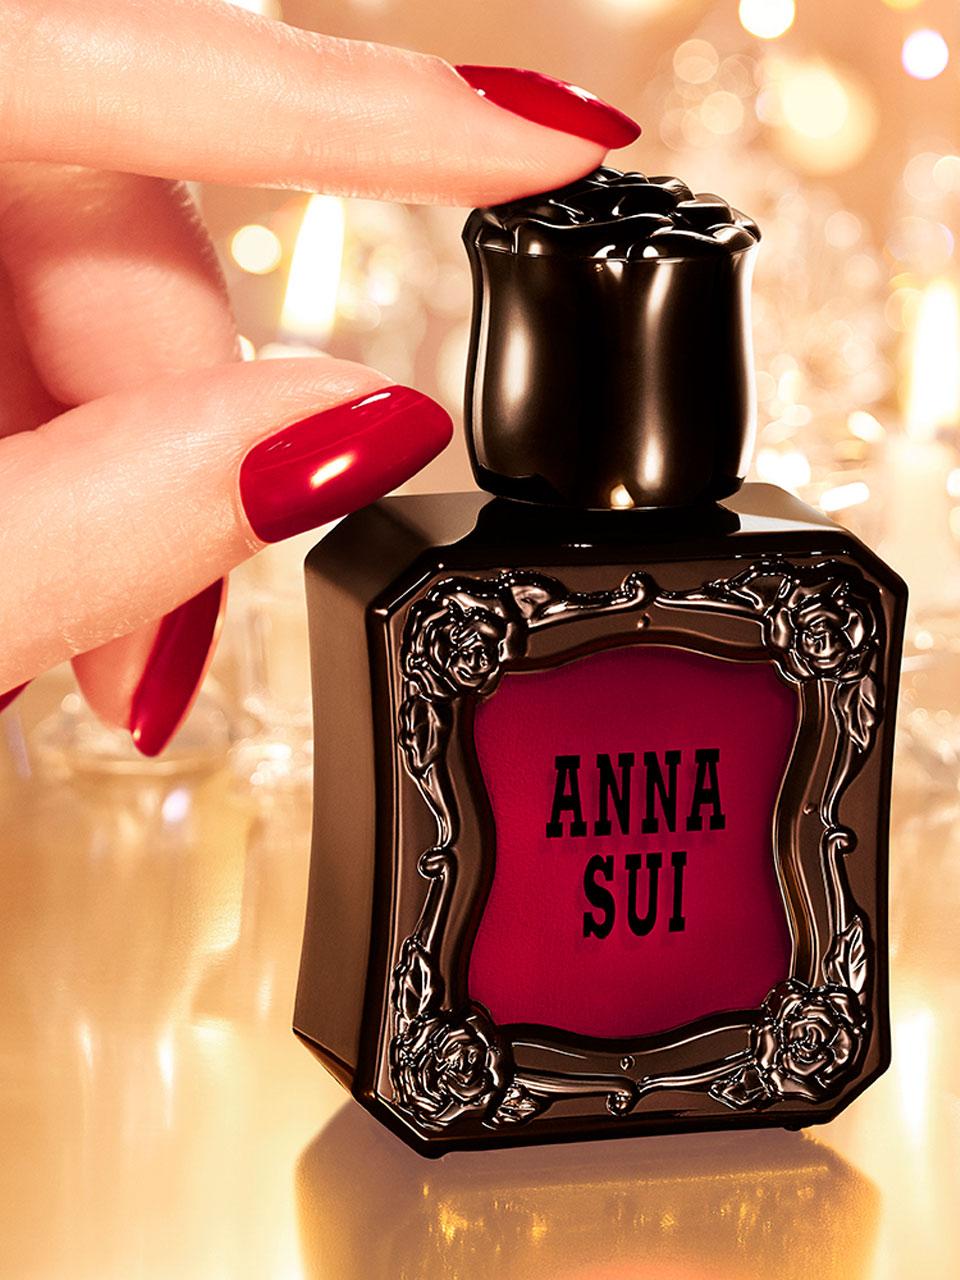 〈アナ スイ コスメティックス〉のティーローズ香るネイルカラー。ホリデー限定ラッピングも